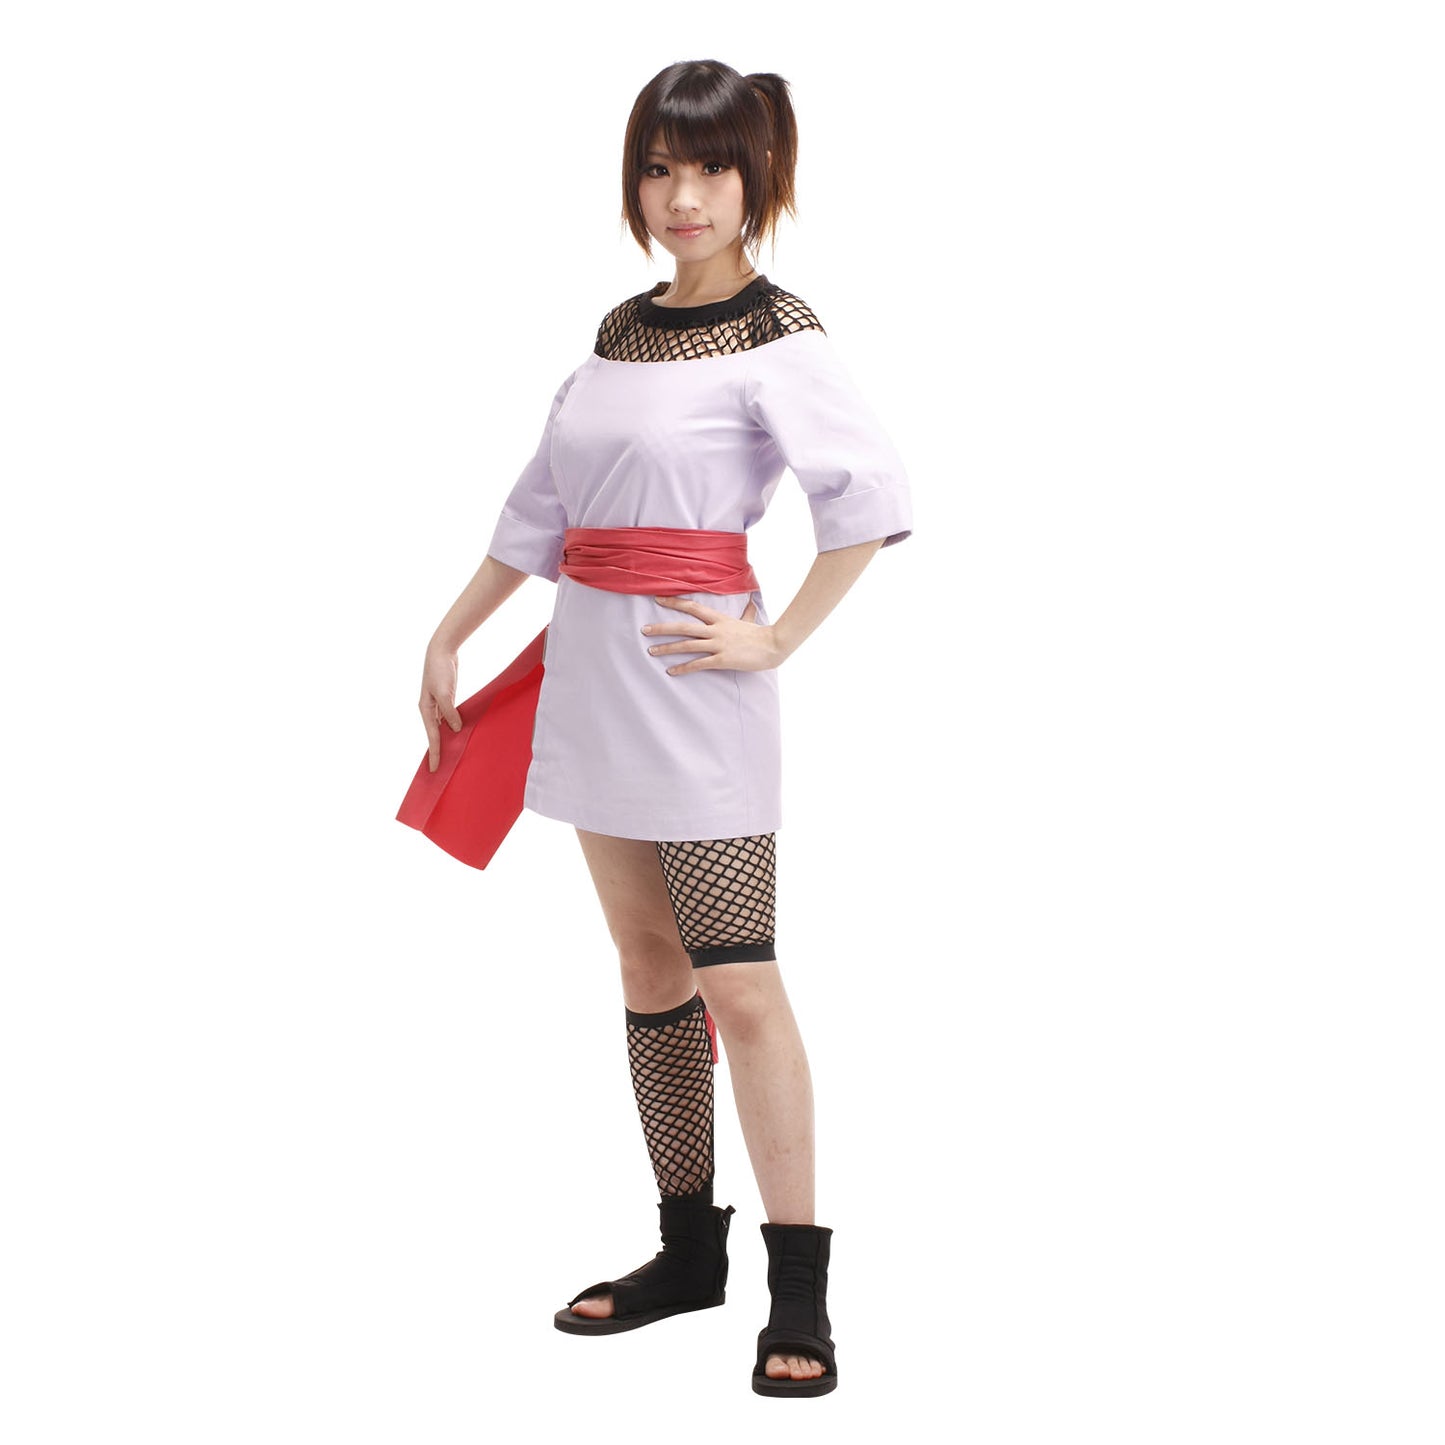 Naruto Costume Temari Taking Chunin Exam Cosplay full Outfit for Women and Kids